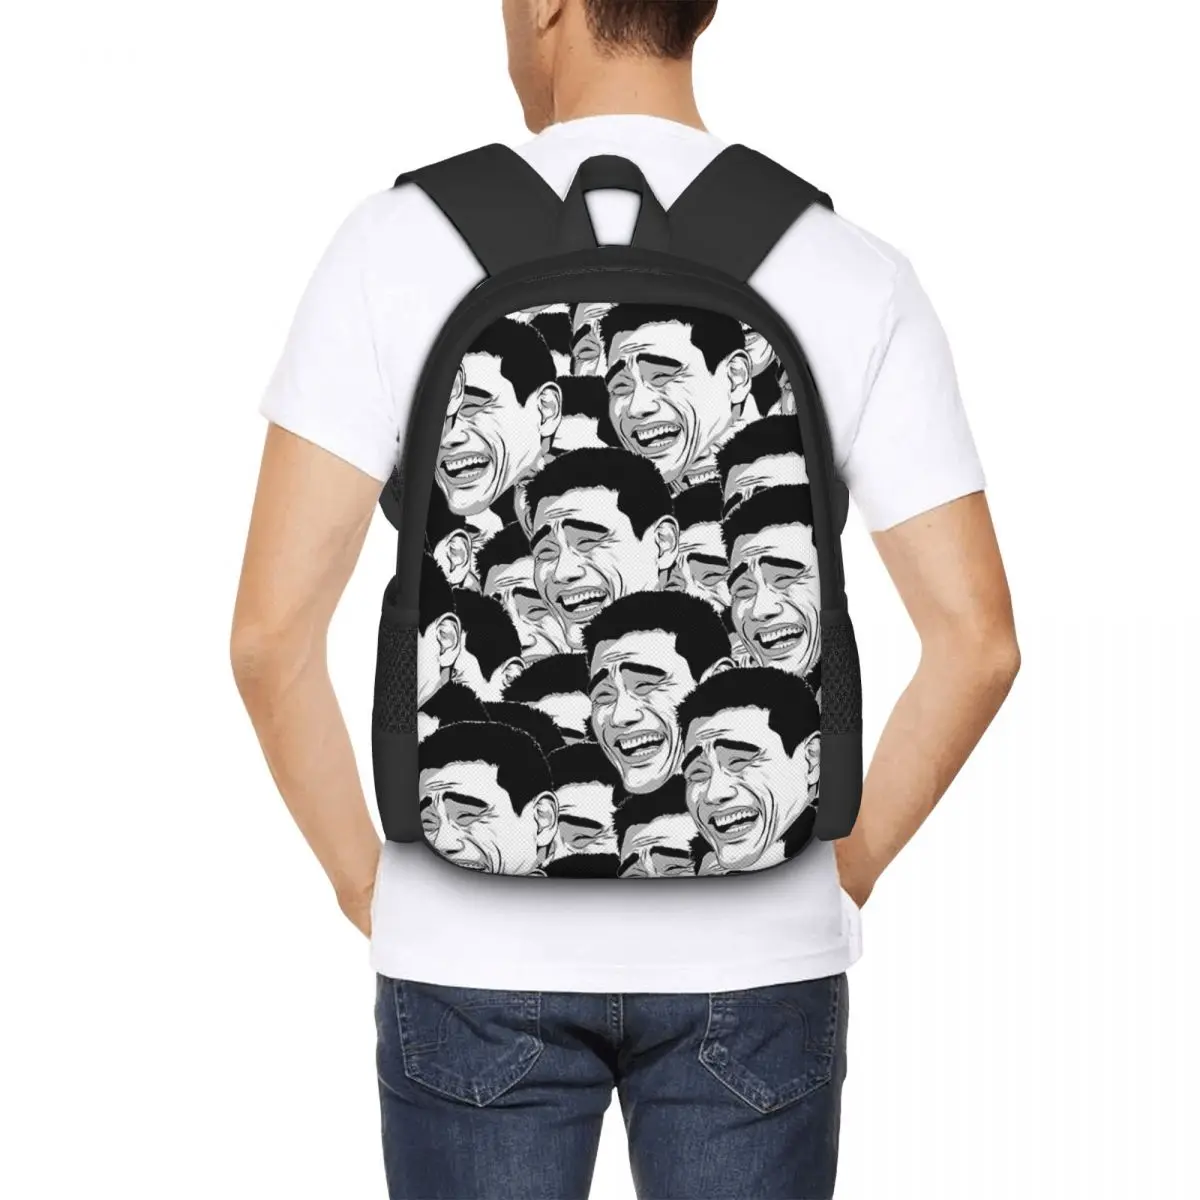 Yao Ming - Meme Backpack for Girls Boys Travel RucksackBackpacks for Teenage school bag